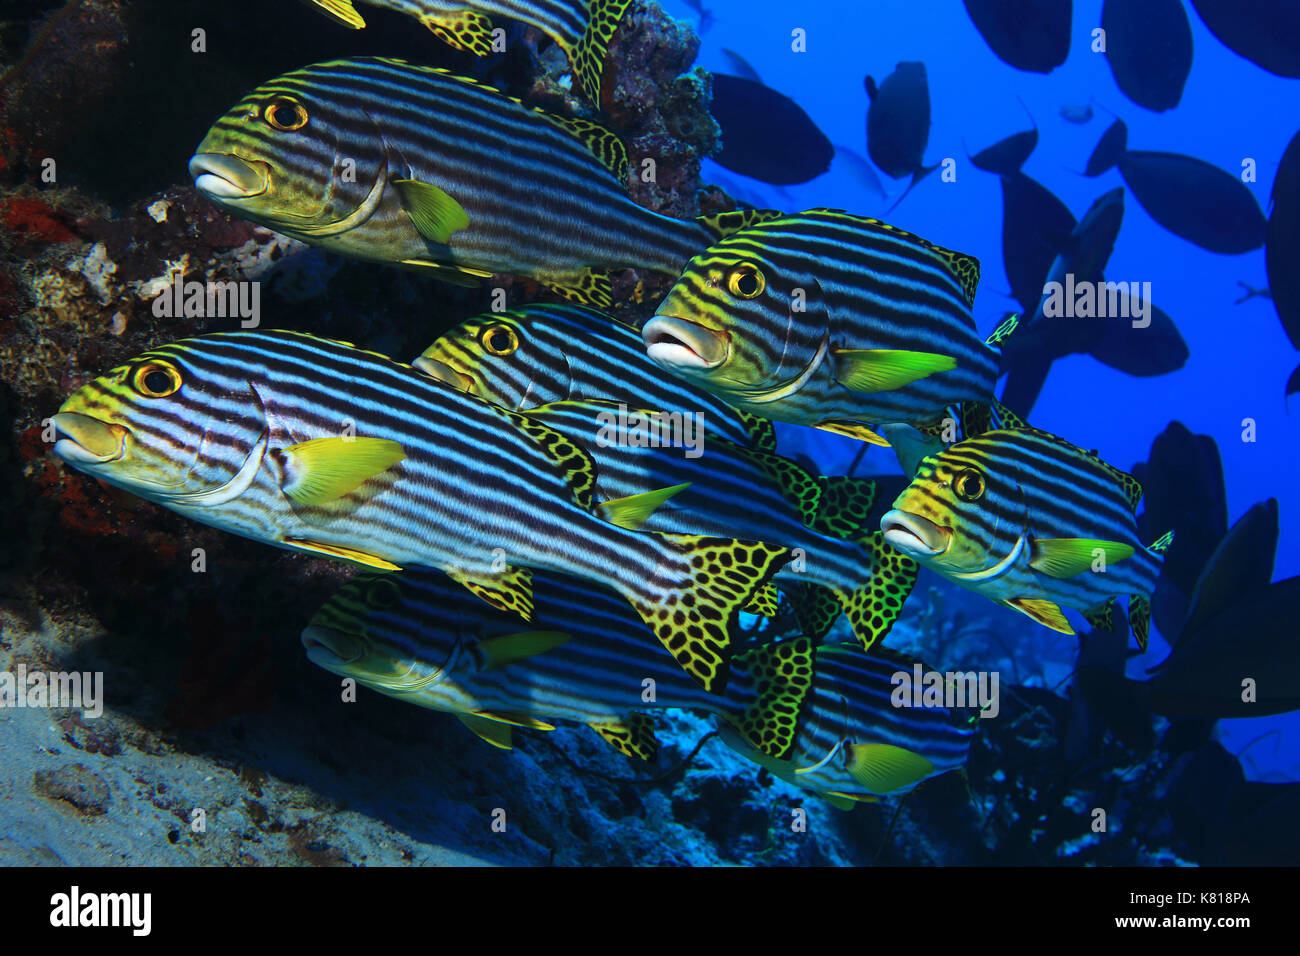 Banc de gaterins orientaux (plectorhinchus orientalis) de poissons sous l'eau dans l'océan tropical Banque D'Images